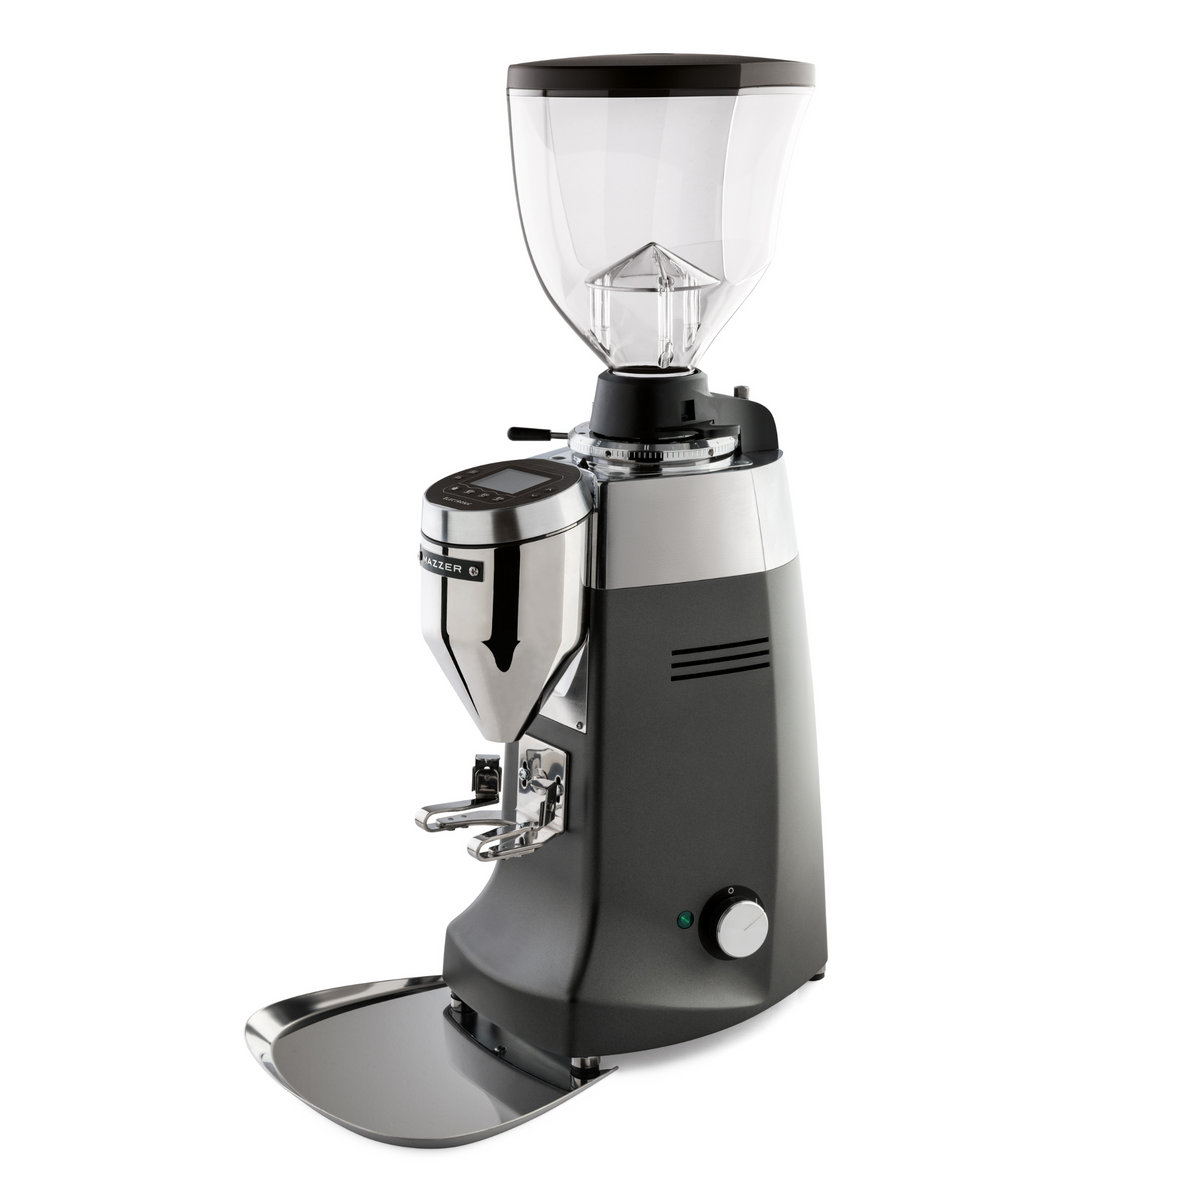 Mazzer Robur S 電子商用濃縮咖啡研磨機